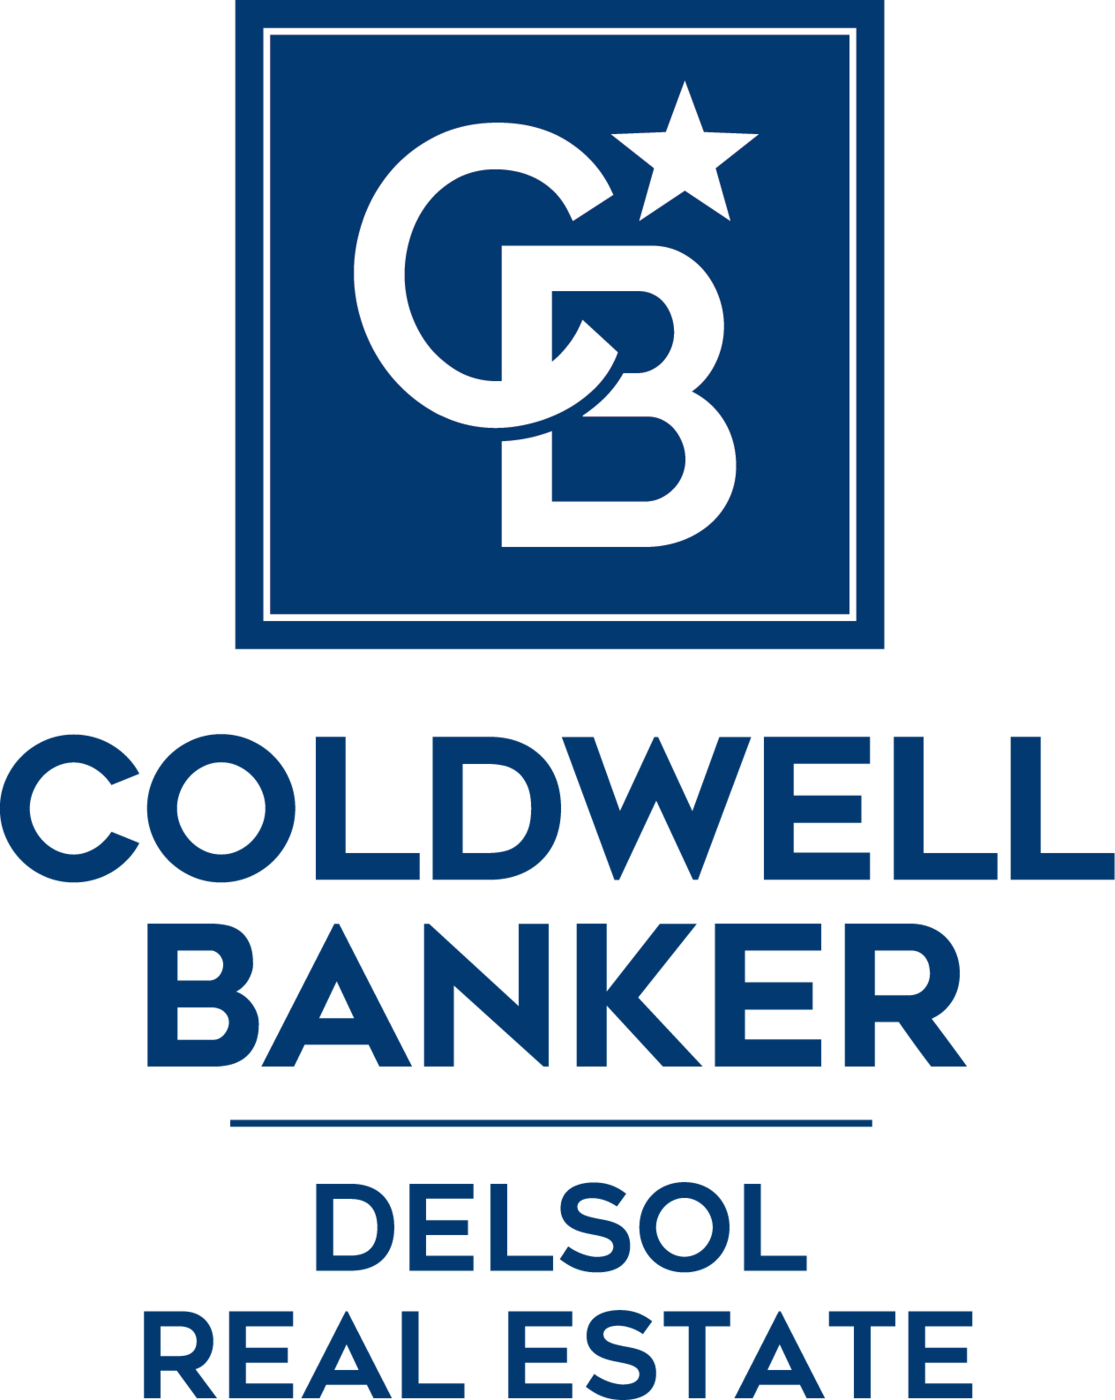 Coldwell Banker Delsol Real Estate